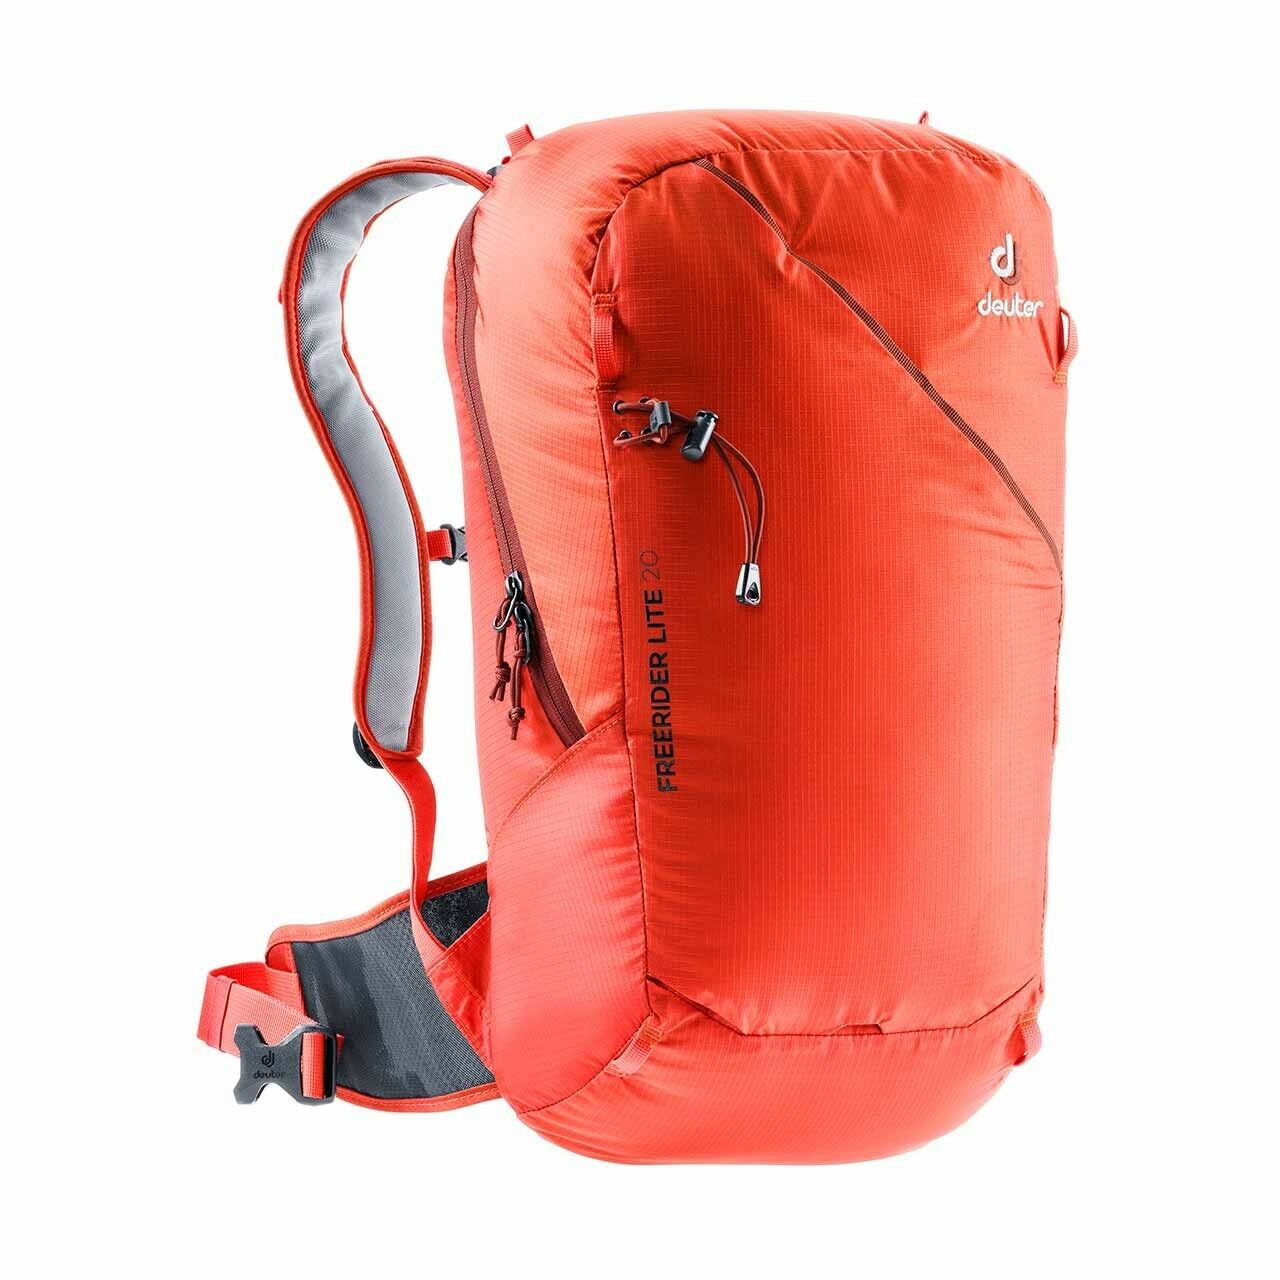 Deuter Freerider Lite 20 Backpack - New w/marking WYPRZEDAŻ, oryginalna gwarancja!